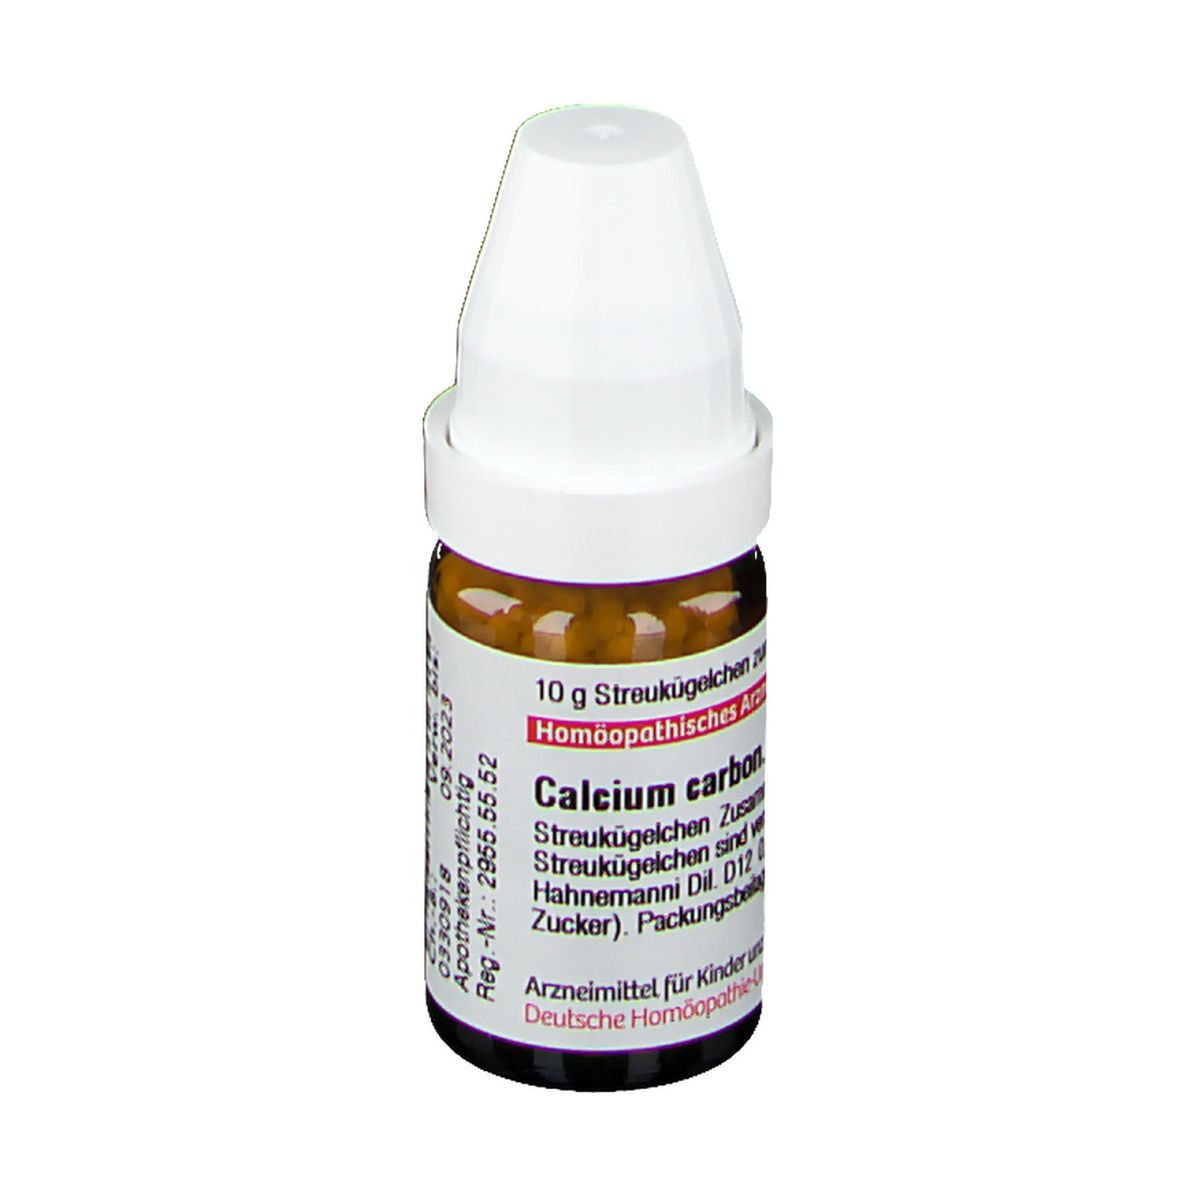 DHU Calcium Carbonicum Hahnemanni D12